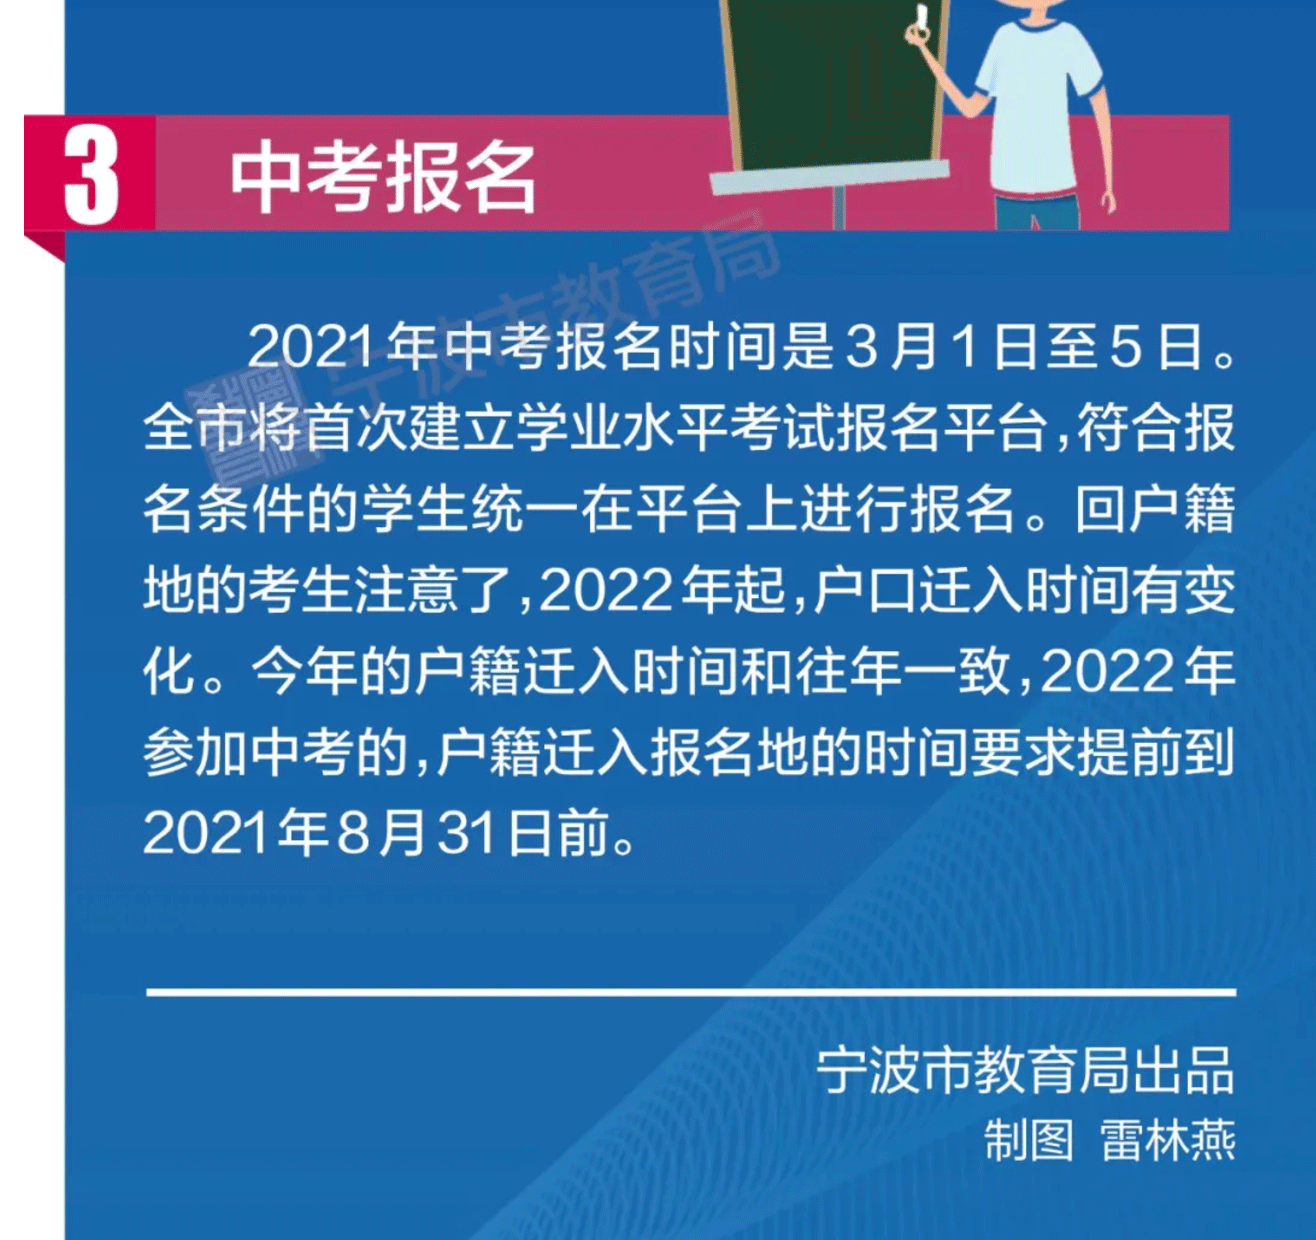 2021年宁波中考报名时间:3月1日-5日